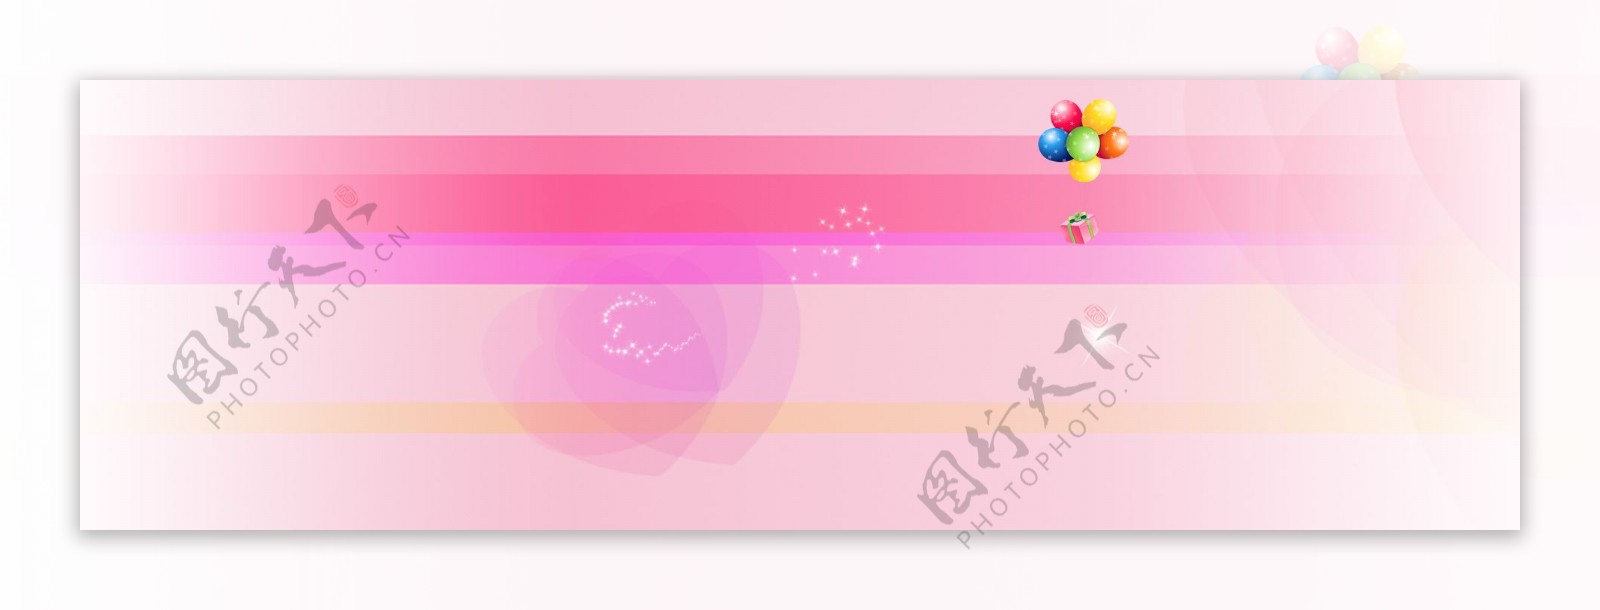 温馨粉色banner背景图